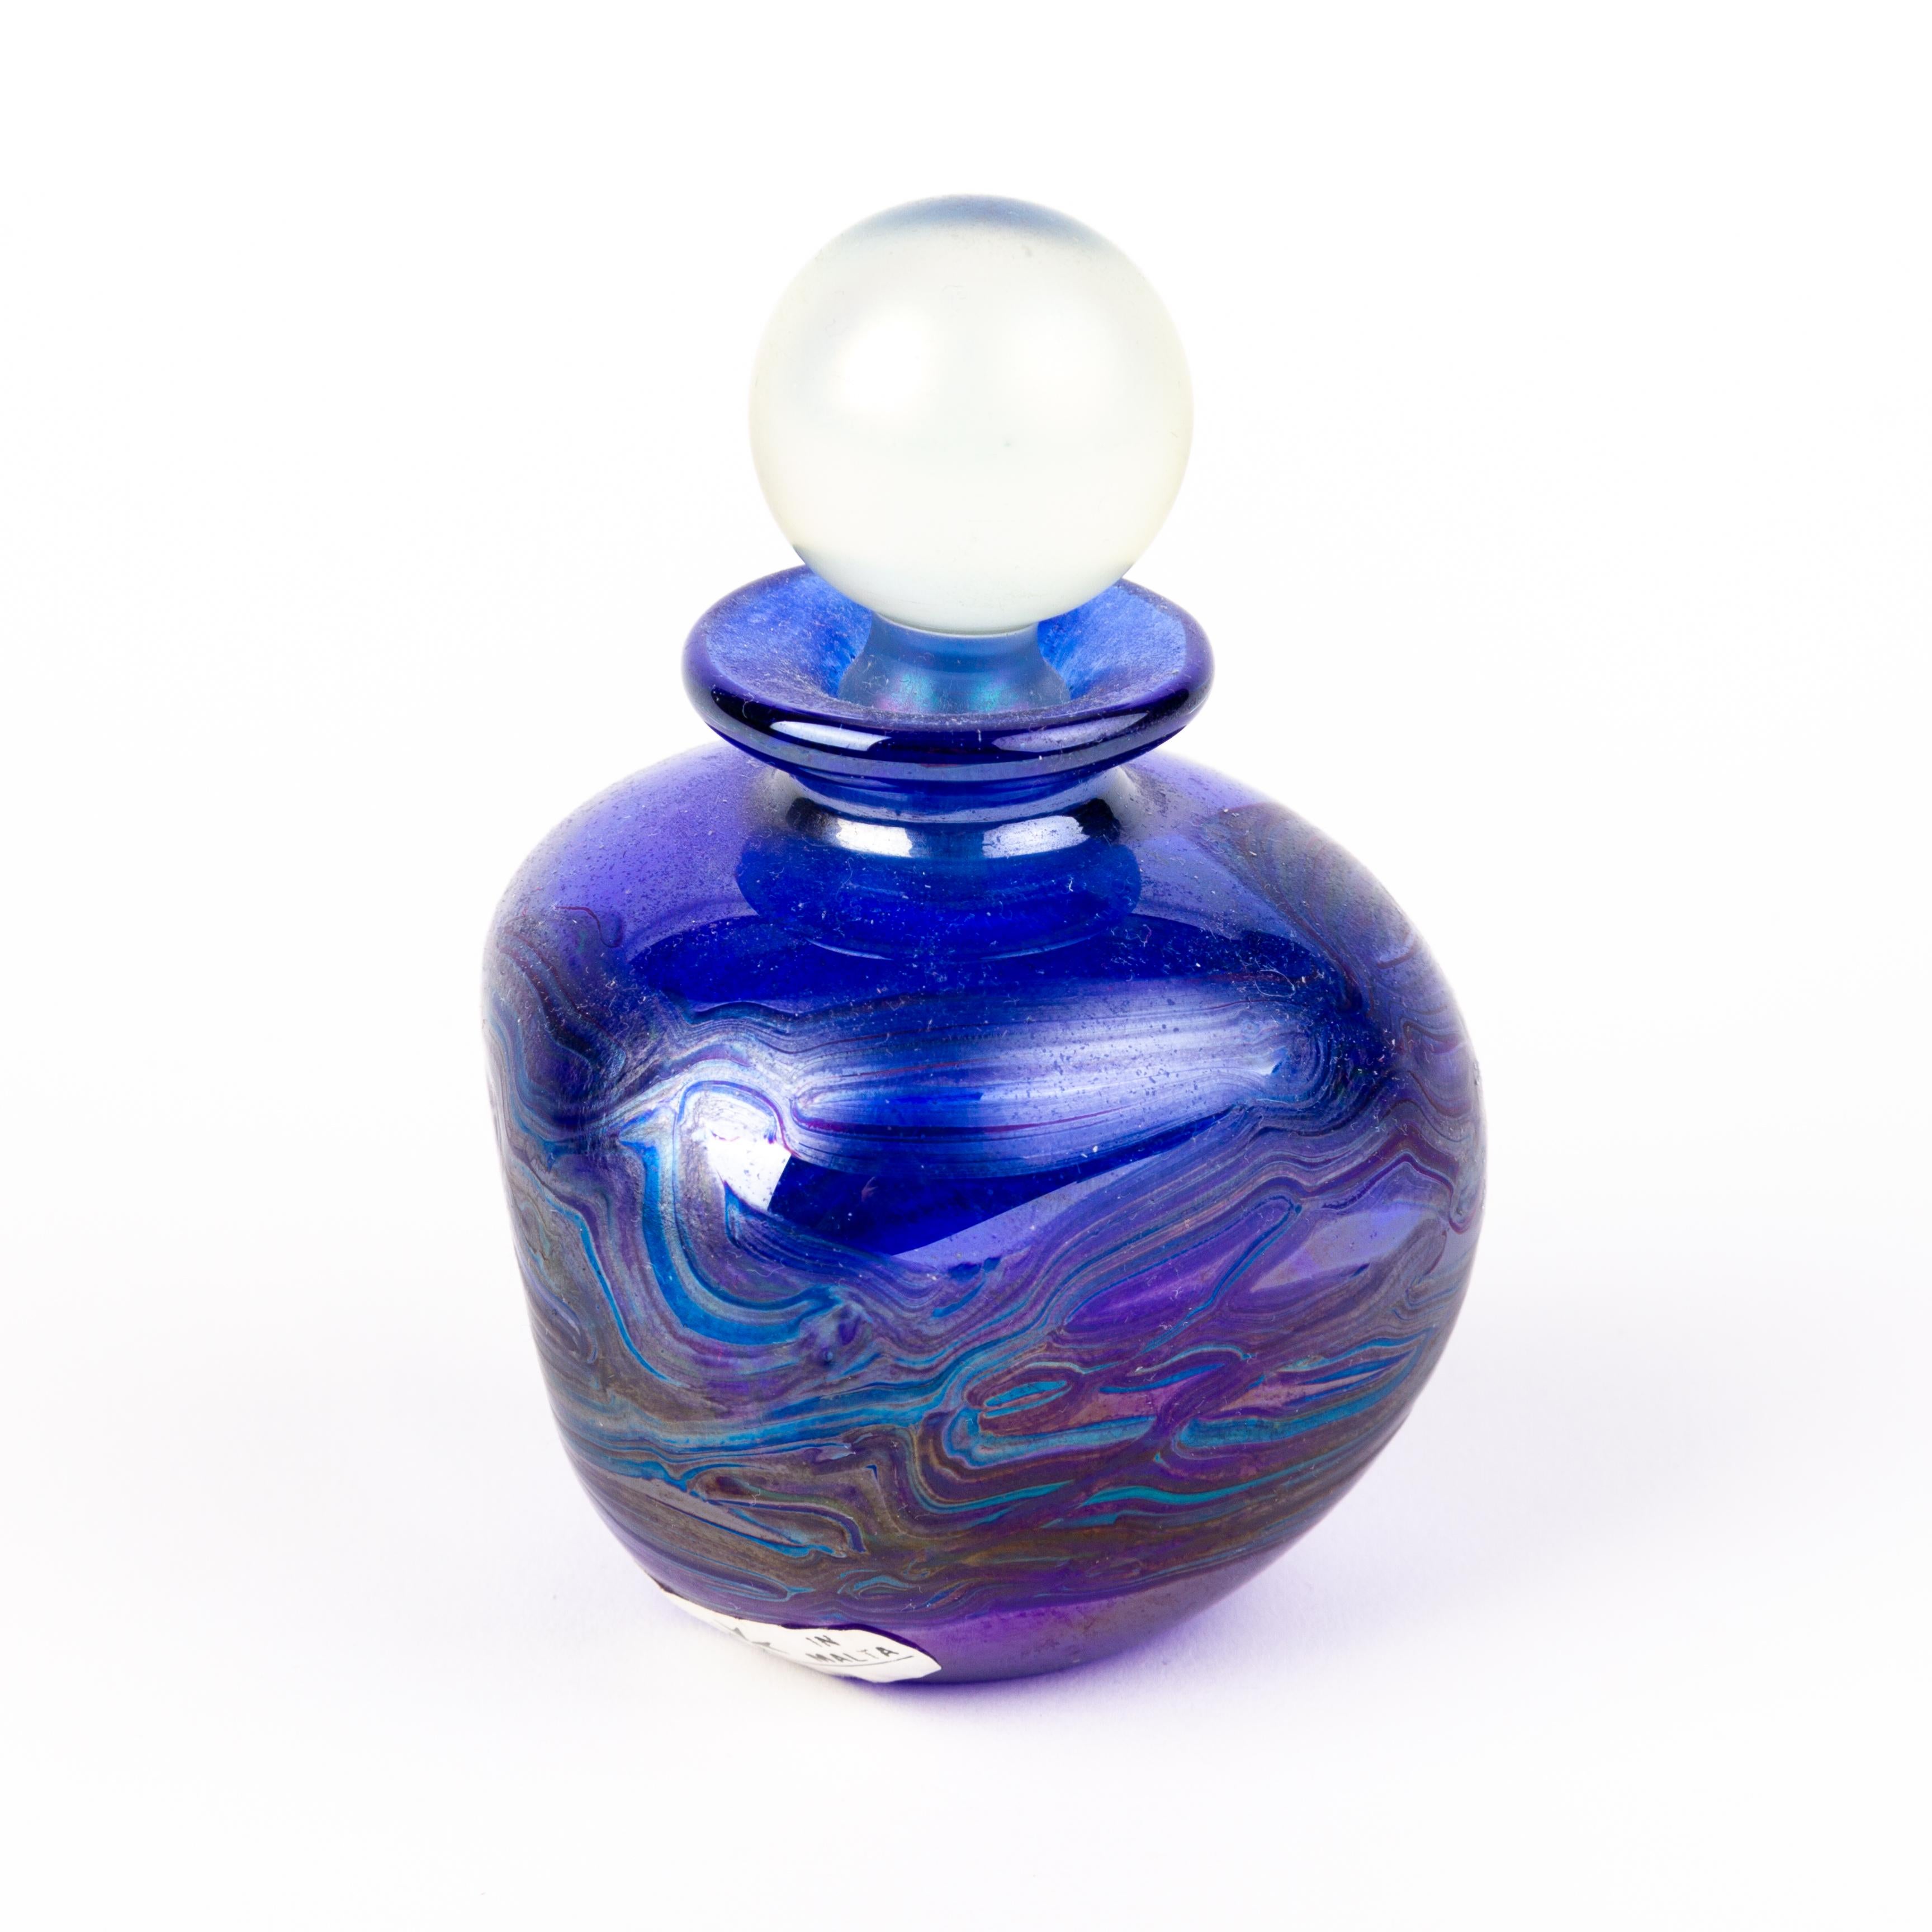 Flacon de parfum en verre design irisé de Malte
Bon état
Expédition internationale gratuite.